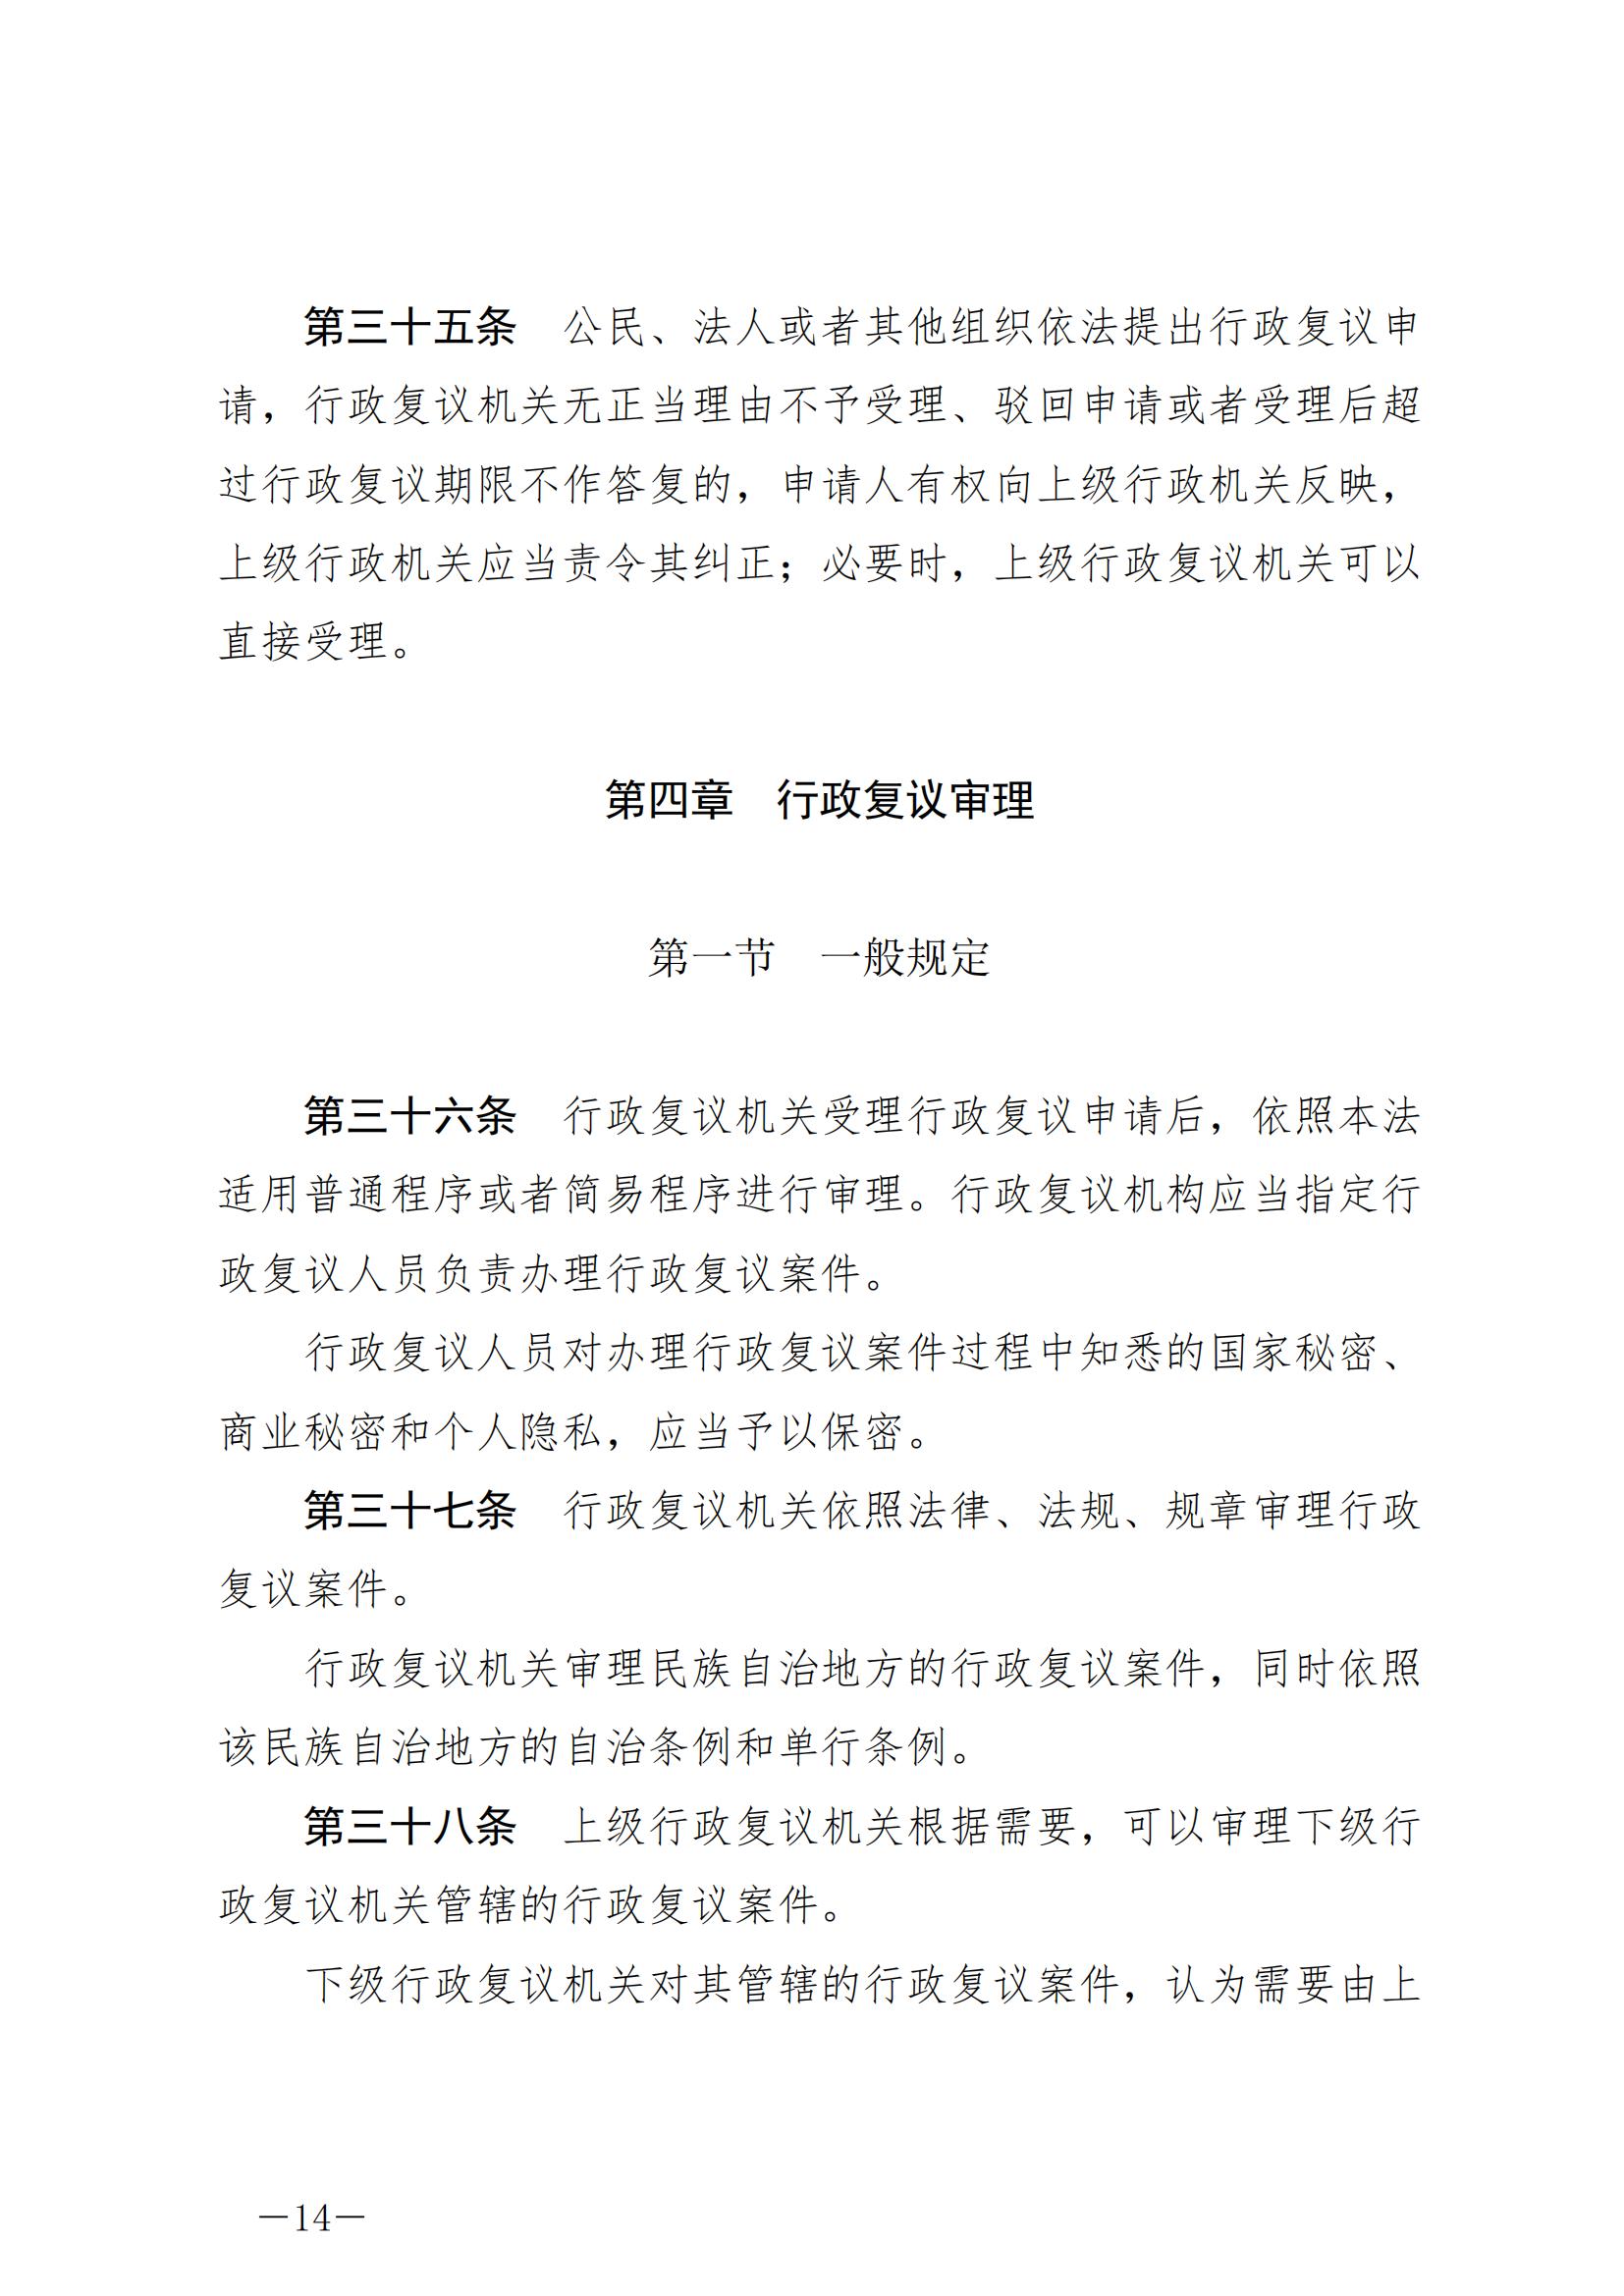 《中华人民共和国行政复议法》_20231204154310_13.jpg